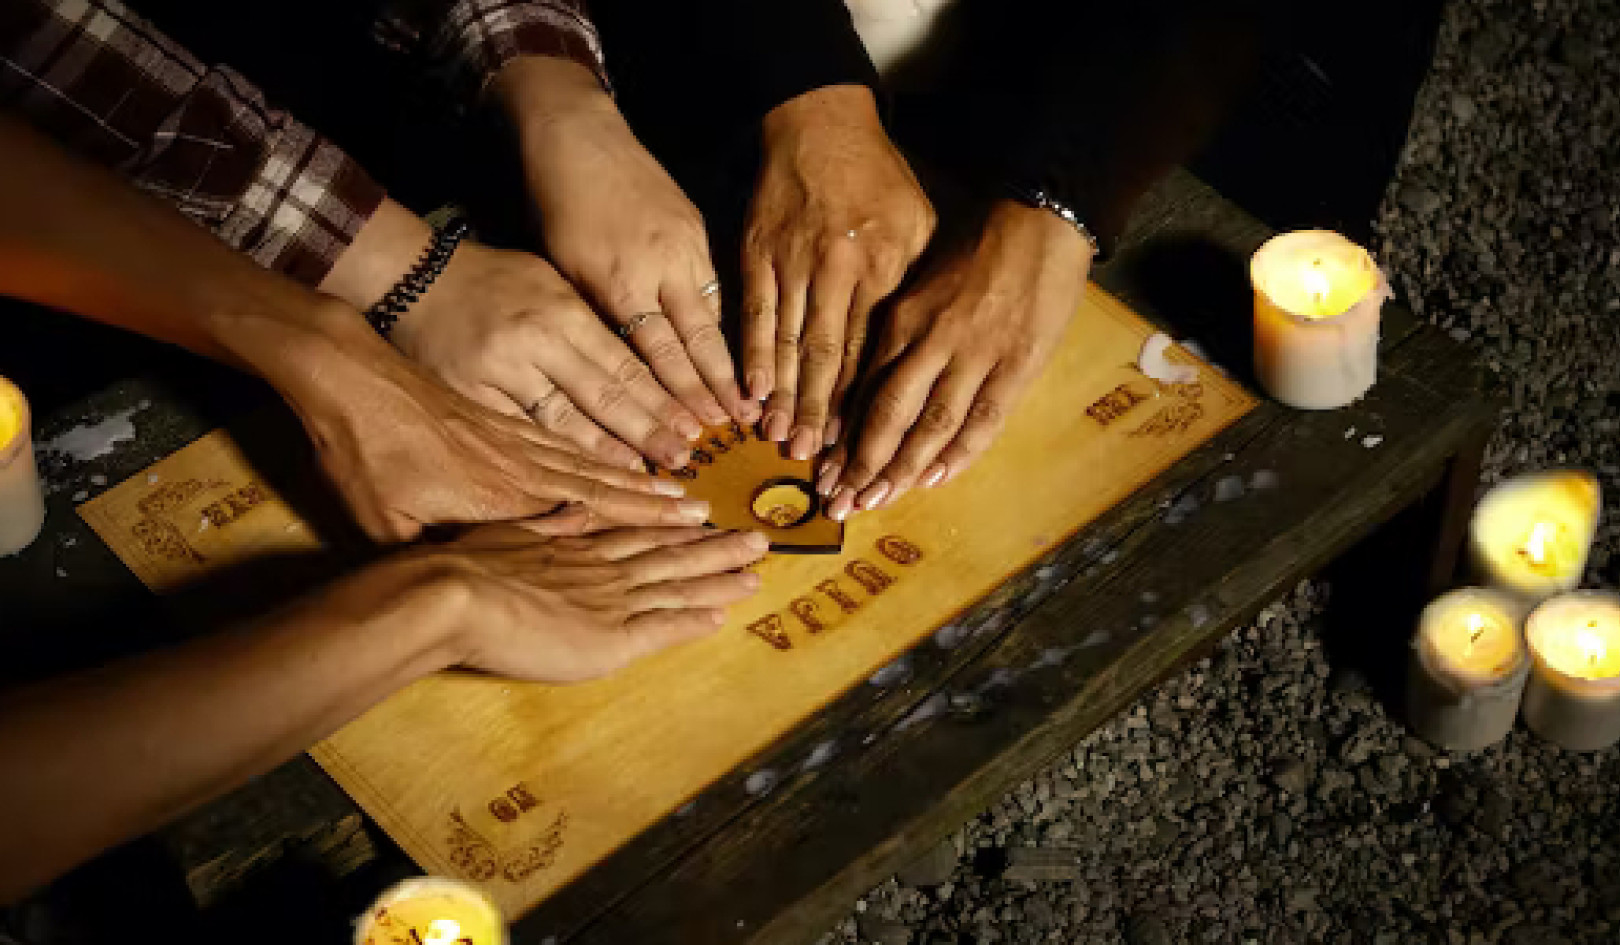 Trois facteurs qui pourraient expliquer pourquoi les planches Ouija semblent fonctionner